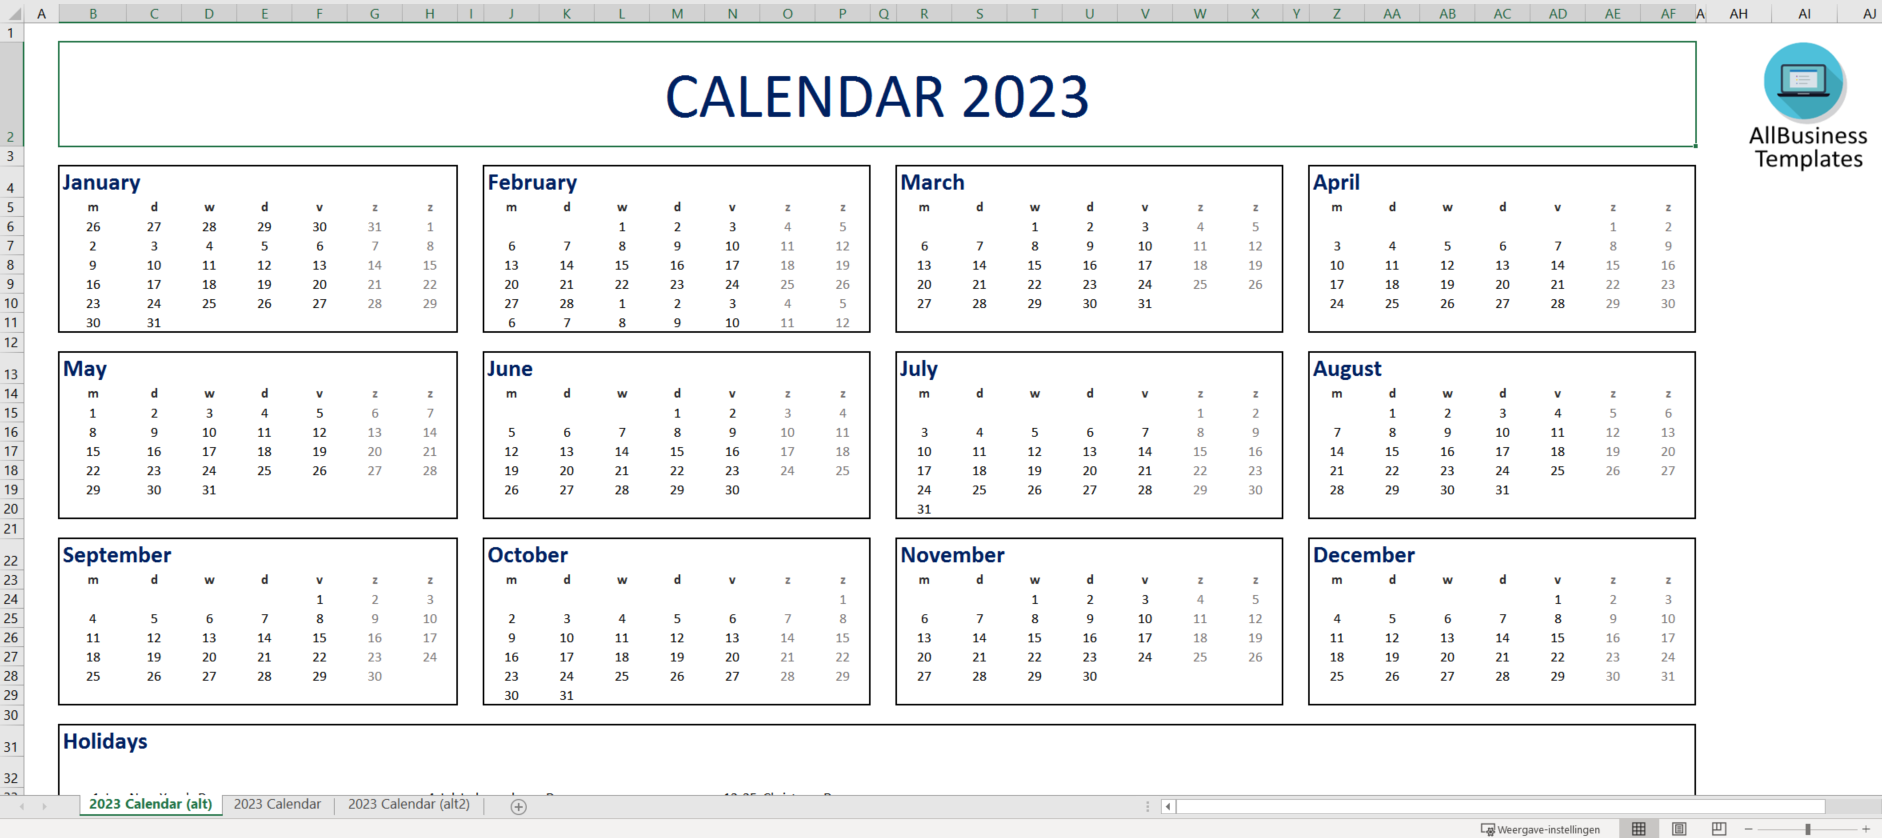 April 2023 Calendar Excel